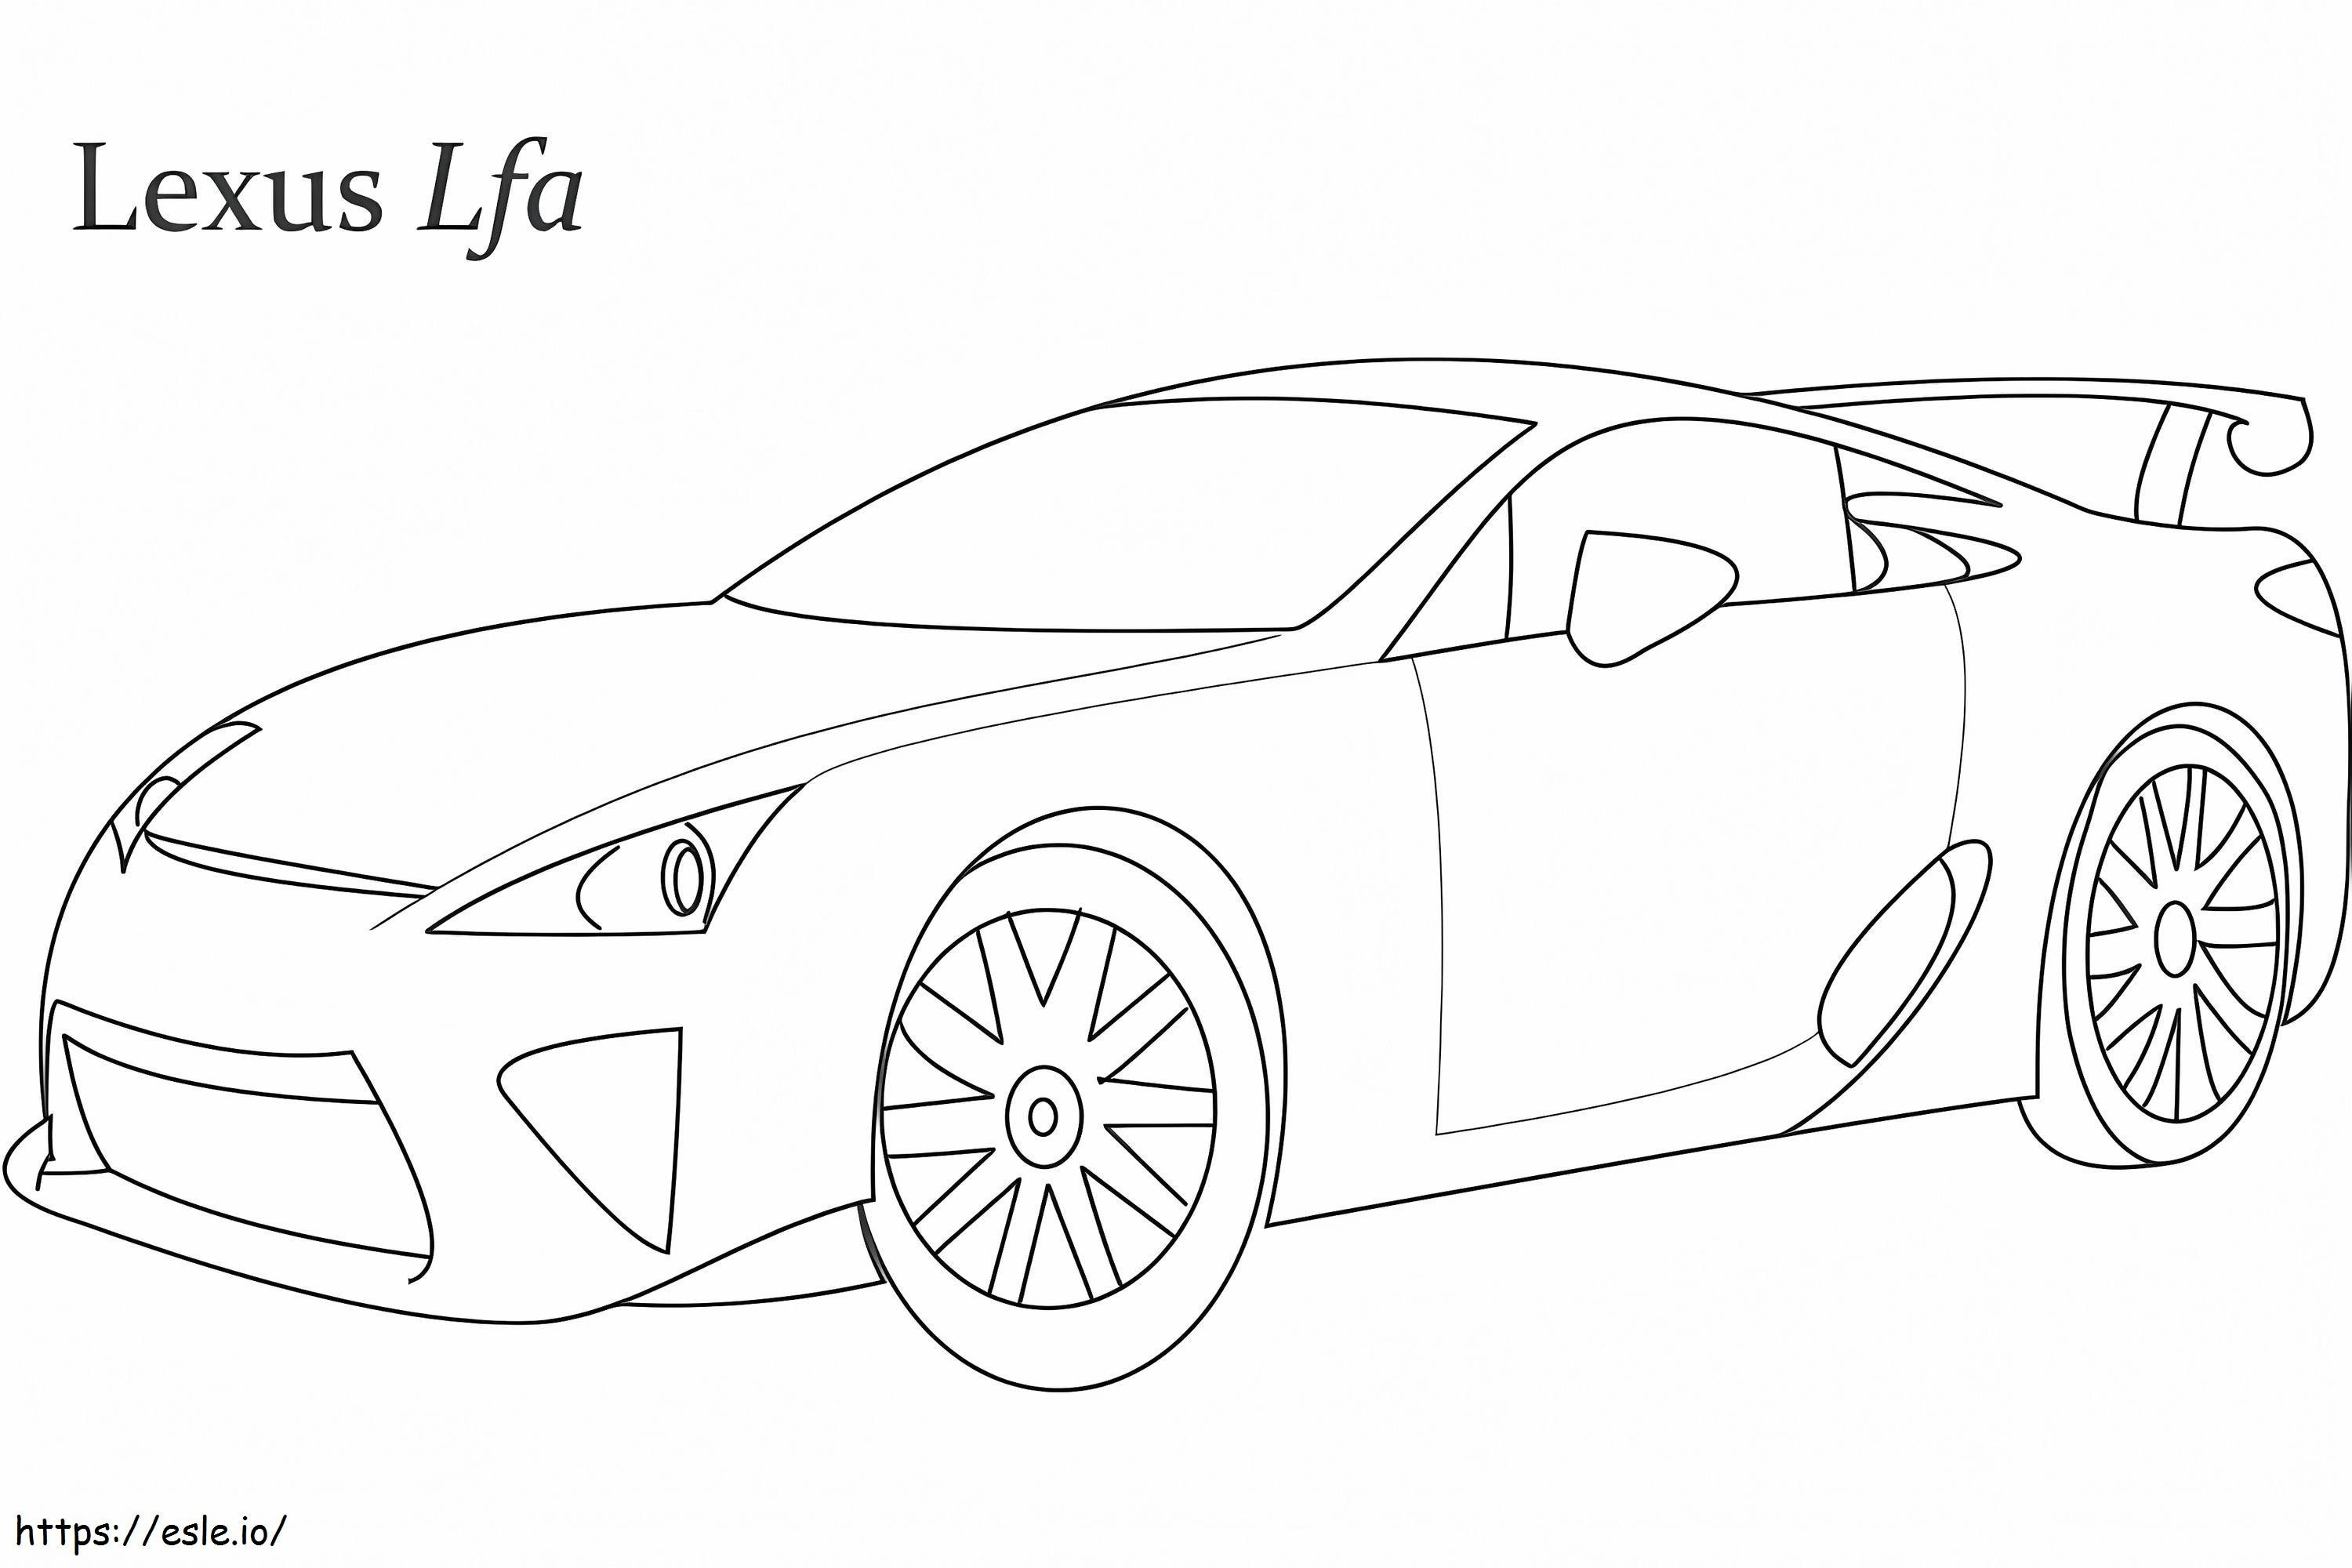 Lexus Lfa Racing Car coloring page